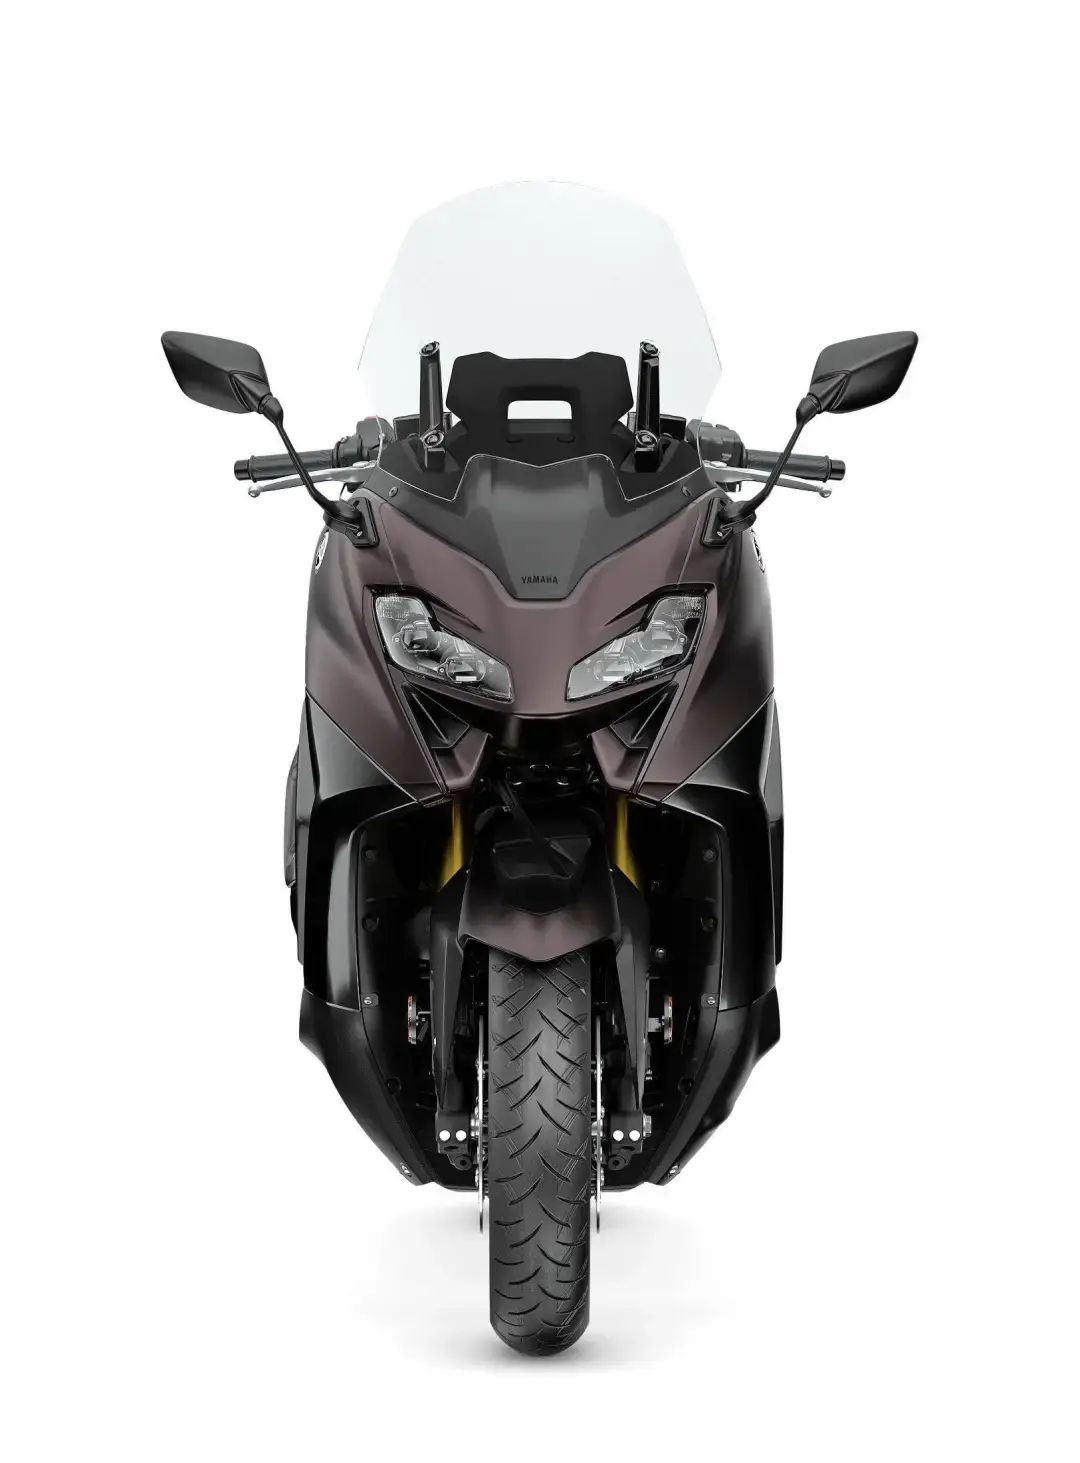 雅马哈tmax560踏板摩托车价格